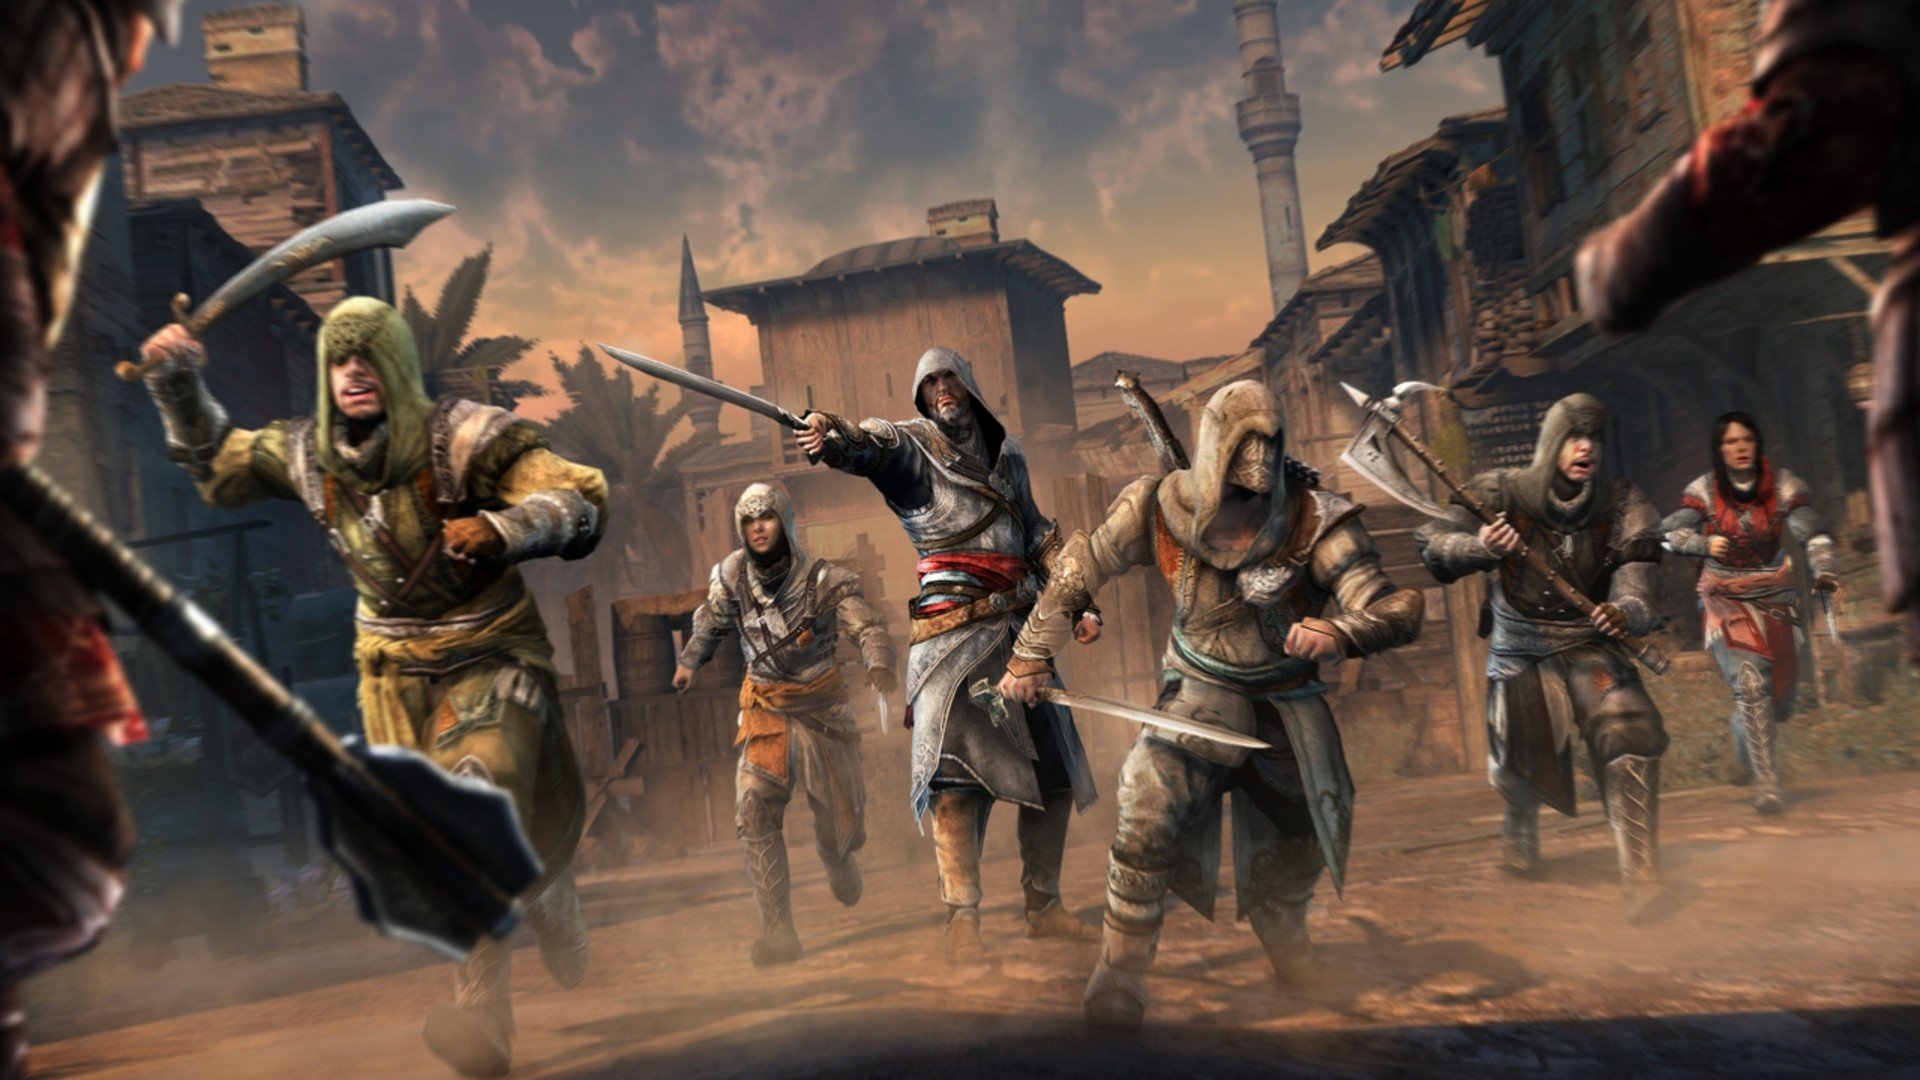 Video games Assassins Creed Assassins Creed Revelations Ezio Auditore da Firenze wallpaperx1080